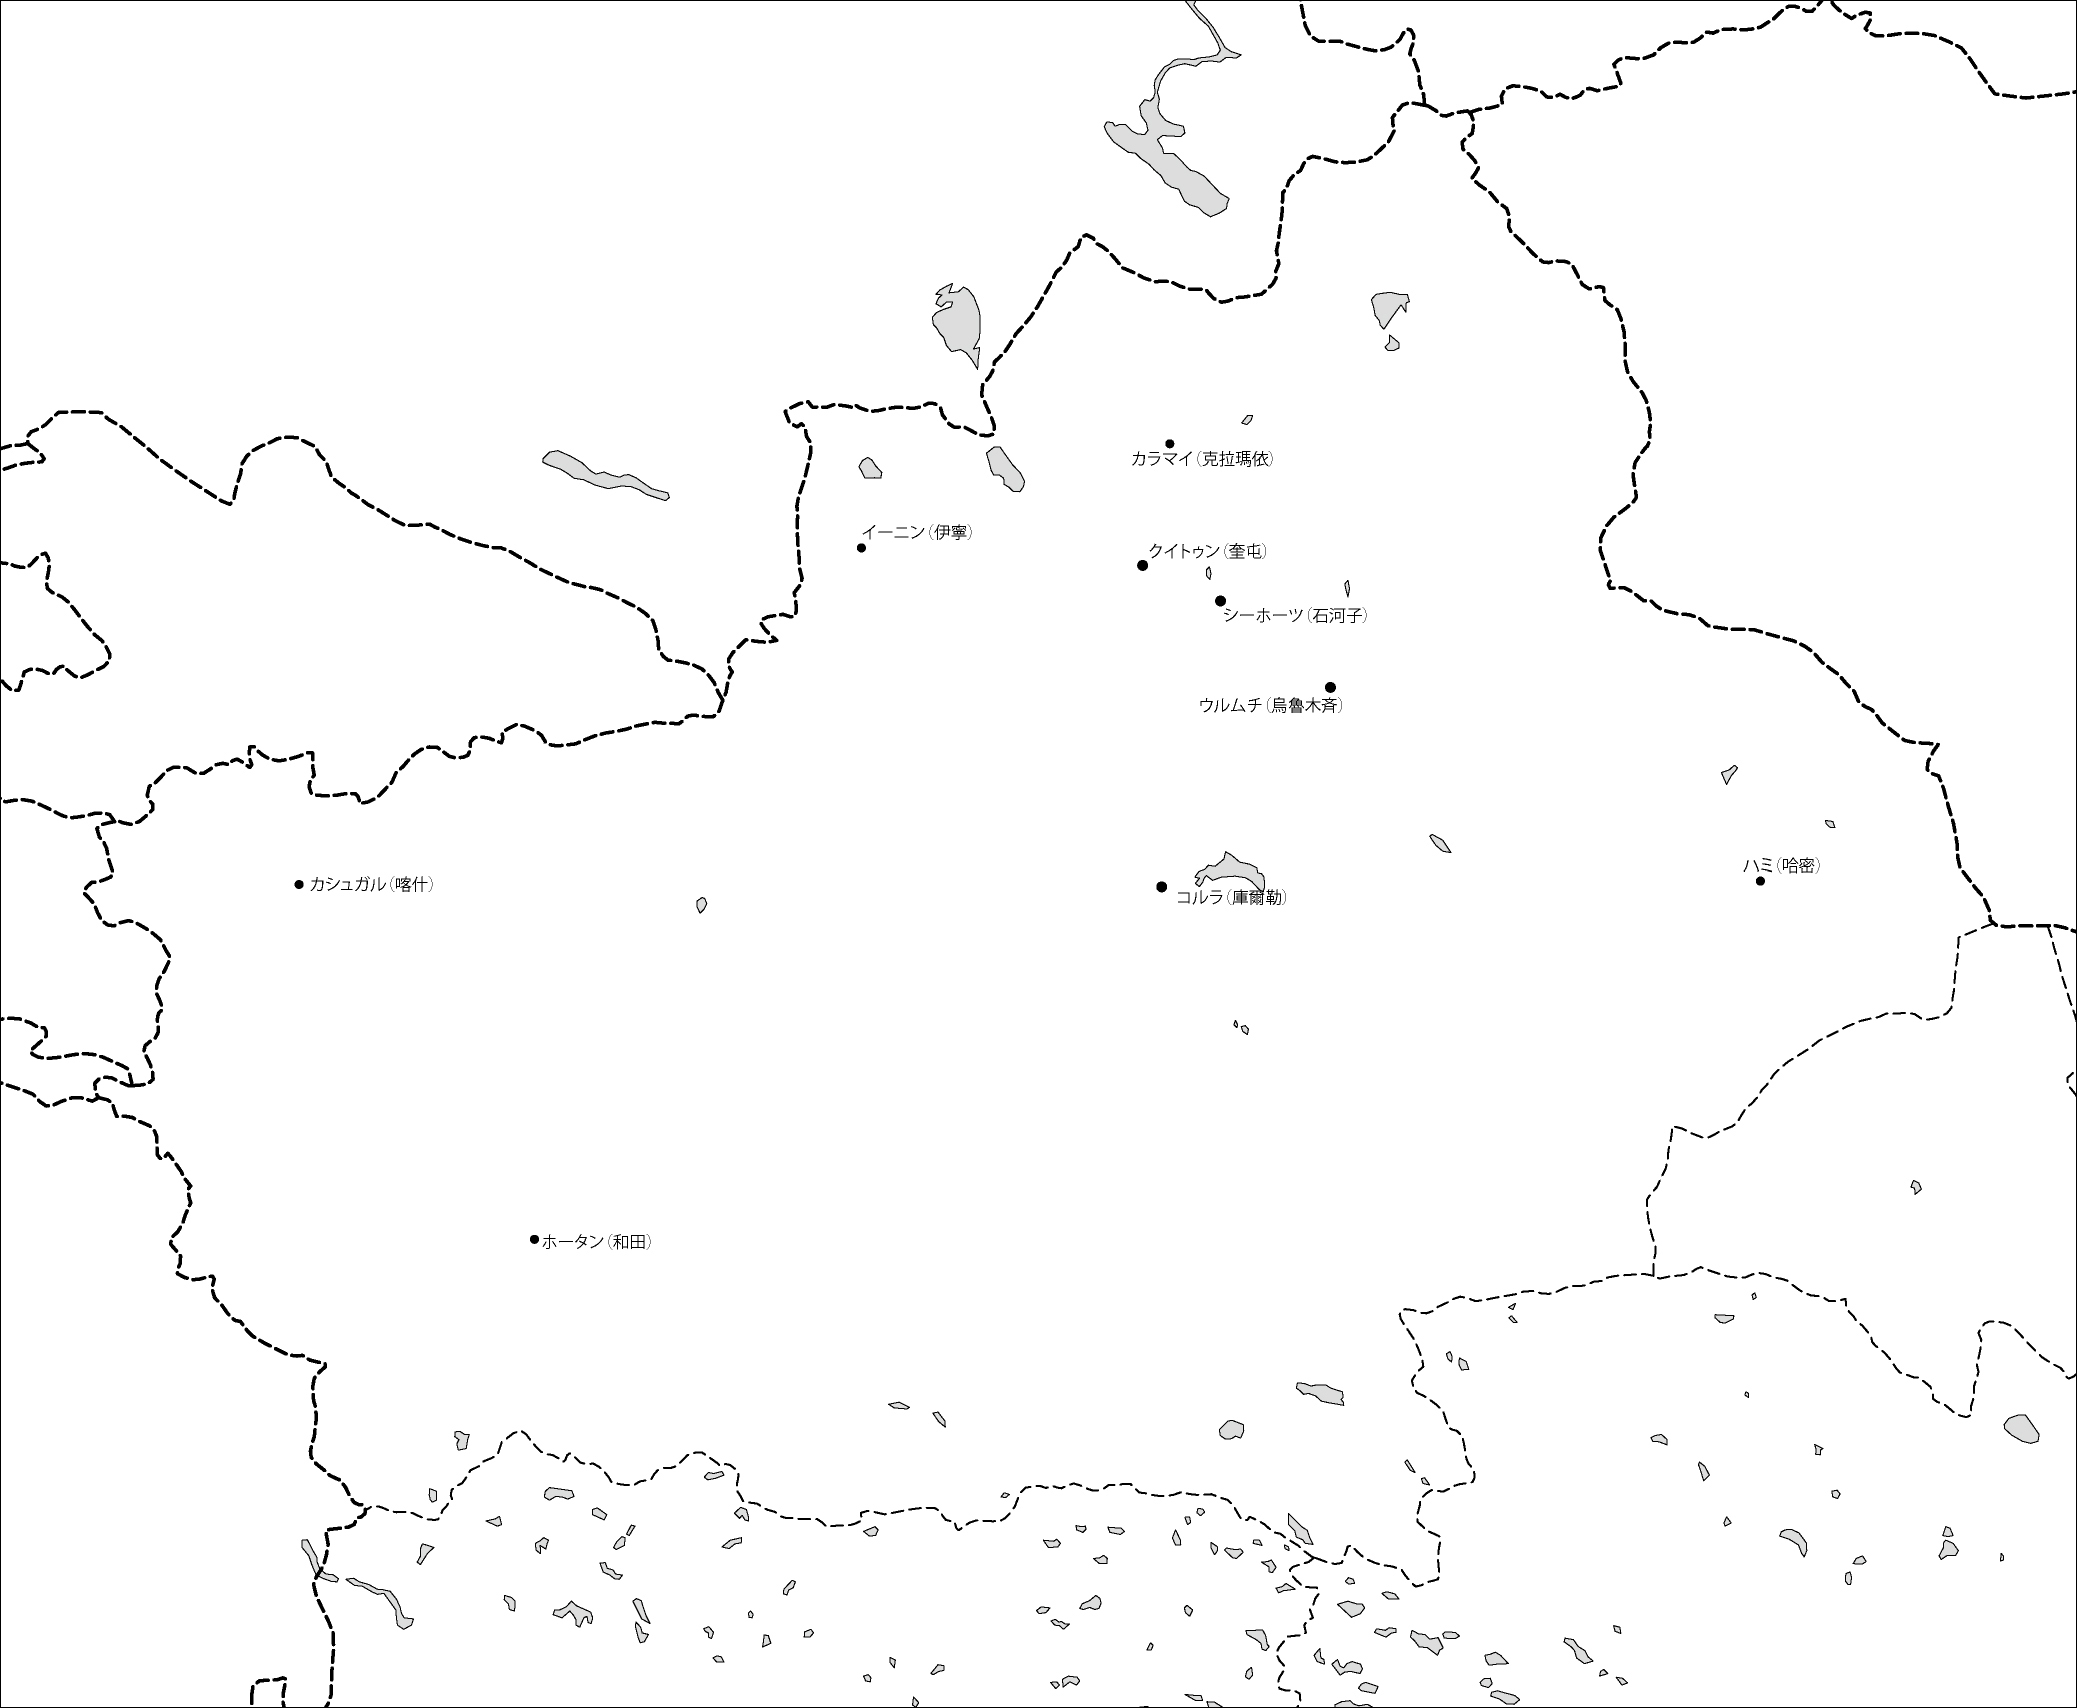 新疆ウイグル自治区白地図(主な都市あり)のフリーデータの画像